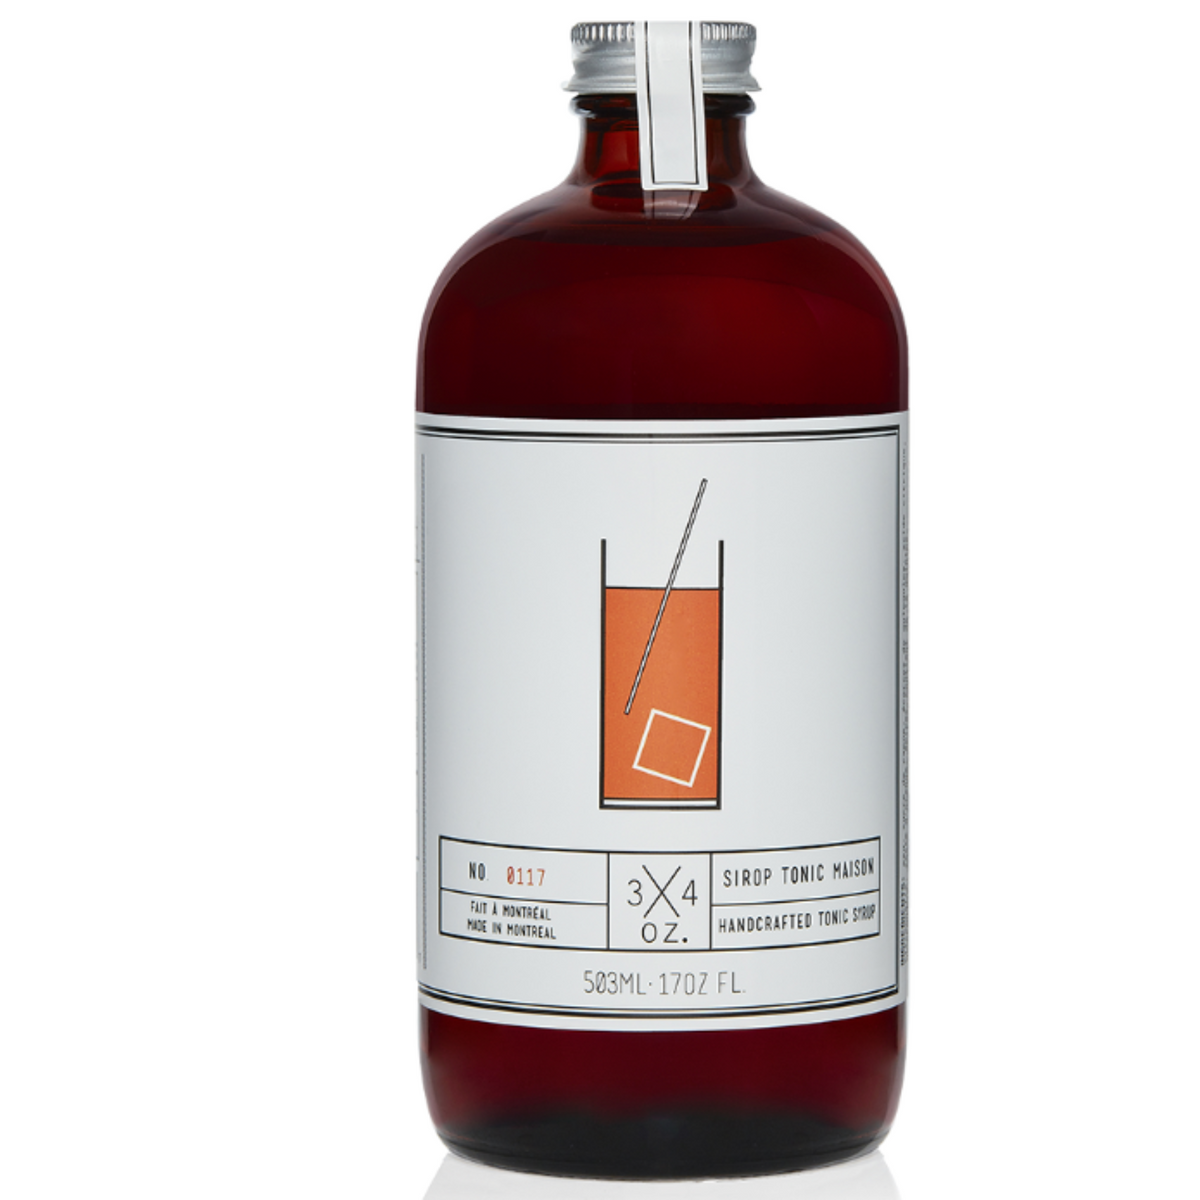 3/4 Oz. Tonic Maison - Tonic Syrup - 503 mL